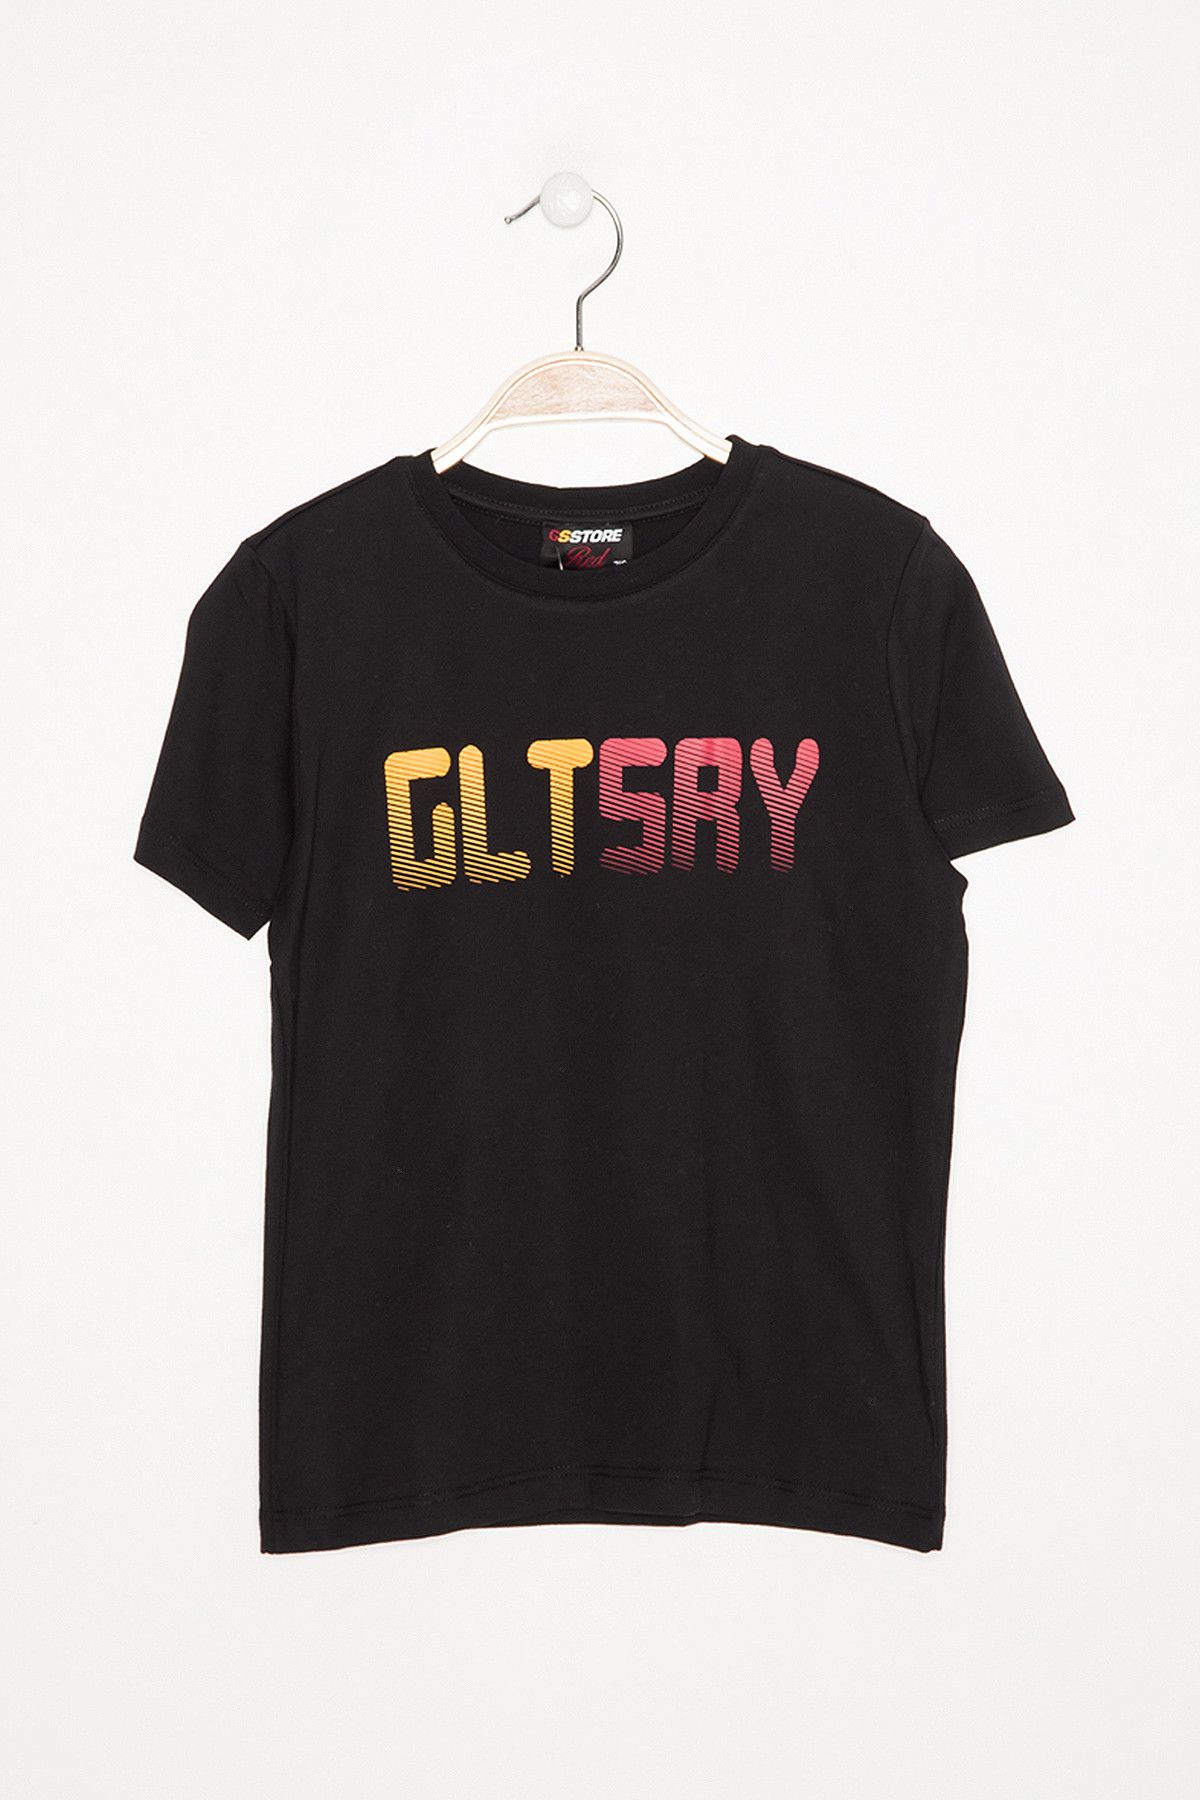 Galatasaray Galatasaray Siyah Çocuk T-Shirt K023-C85686